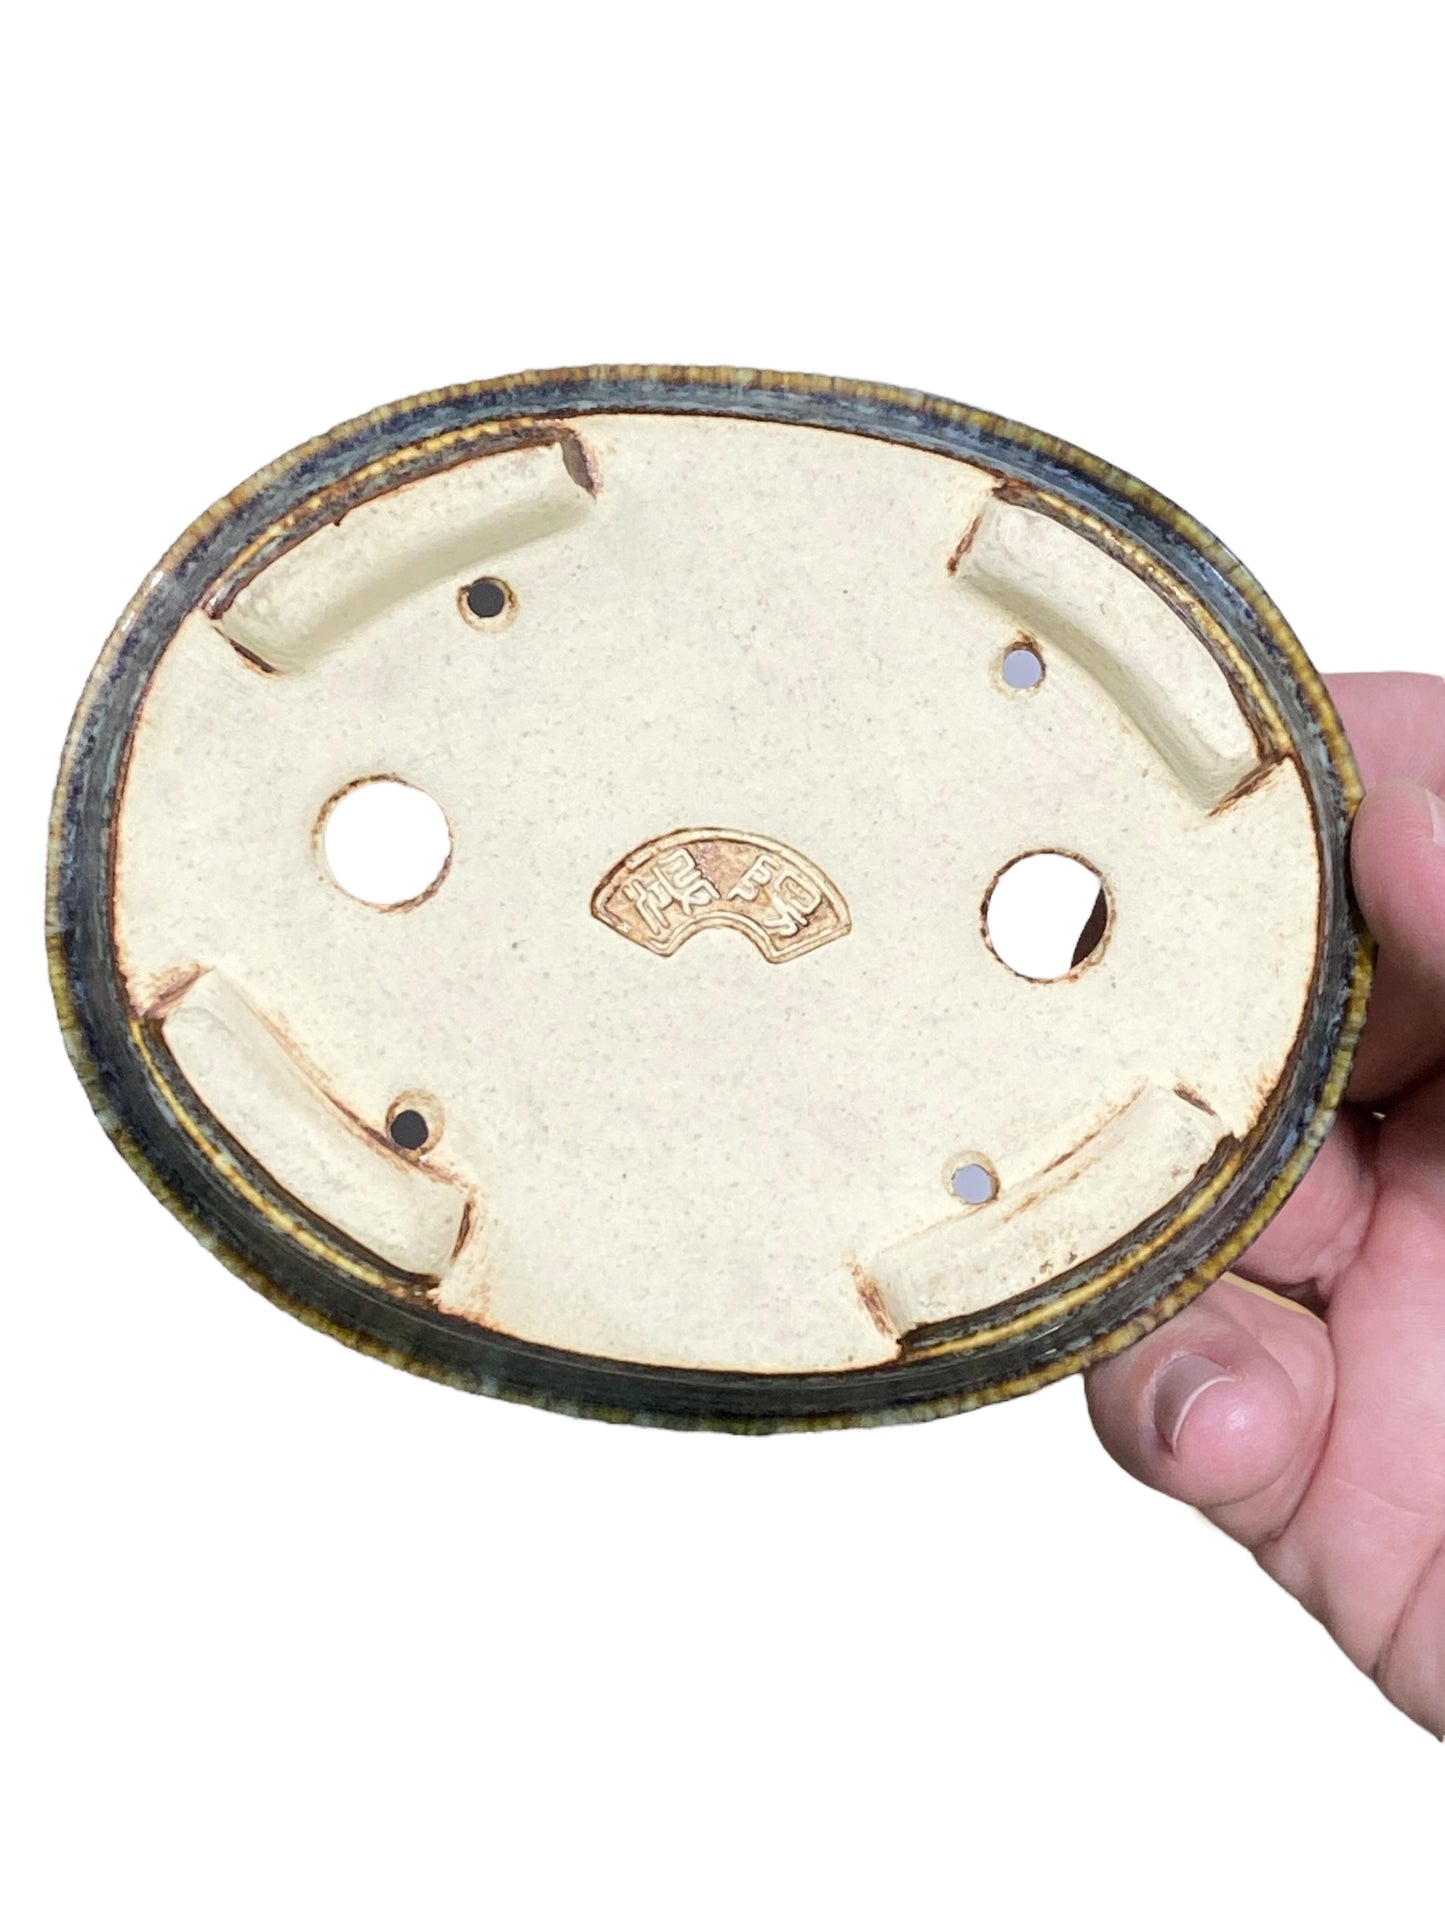 Koyo - Namako Glazed Shohin Oval Bonsai Pot